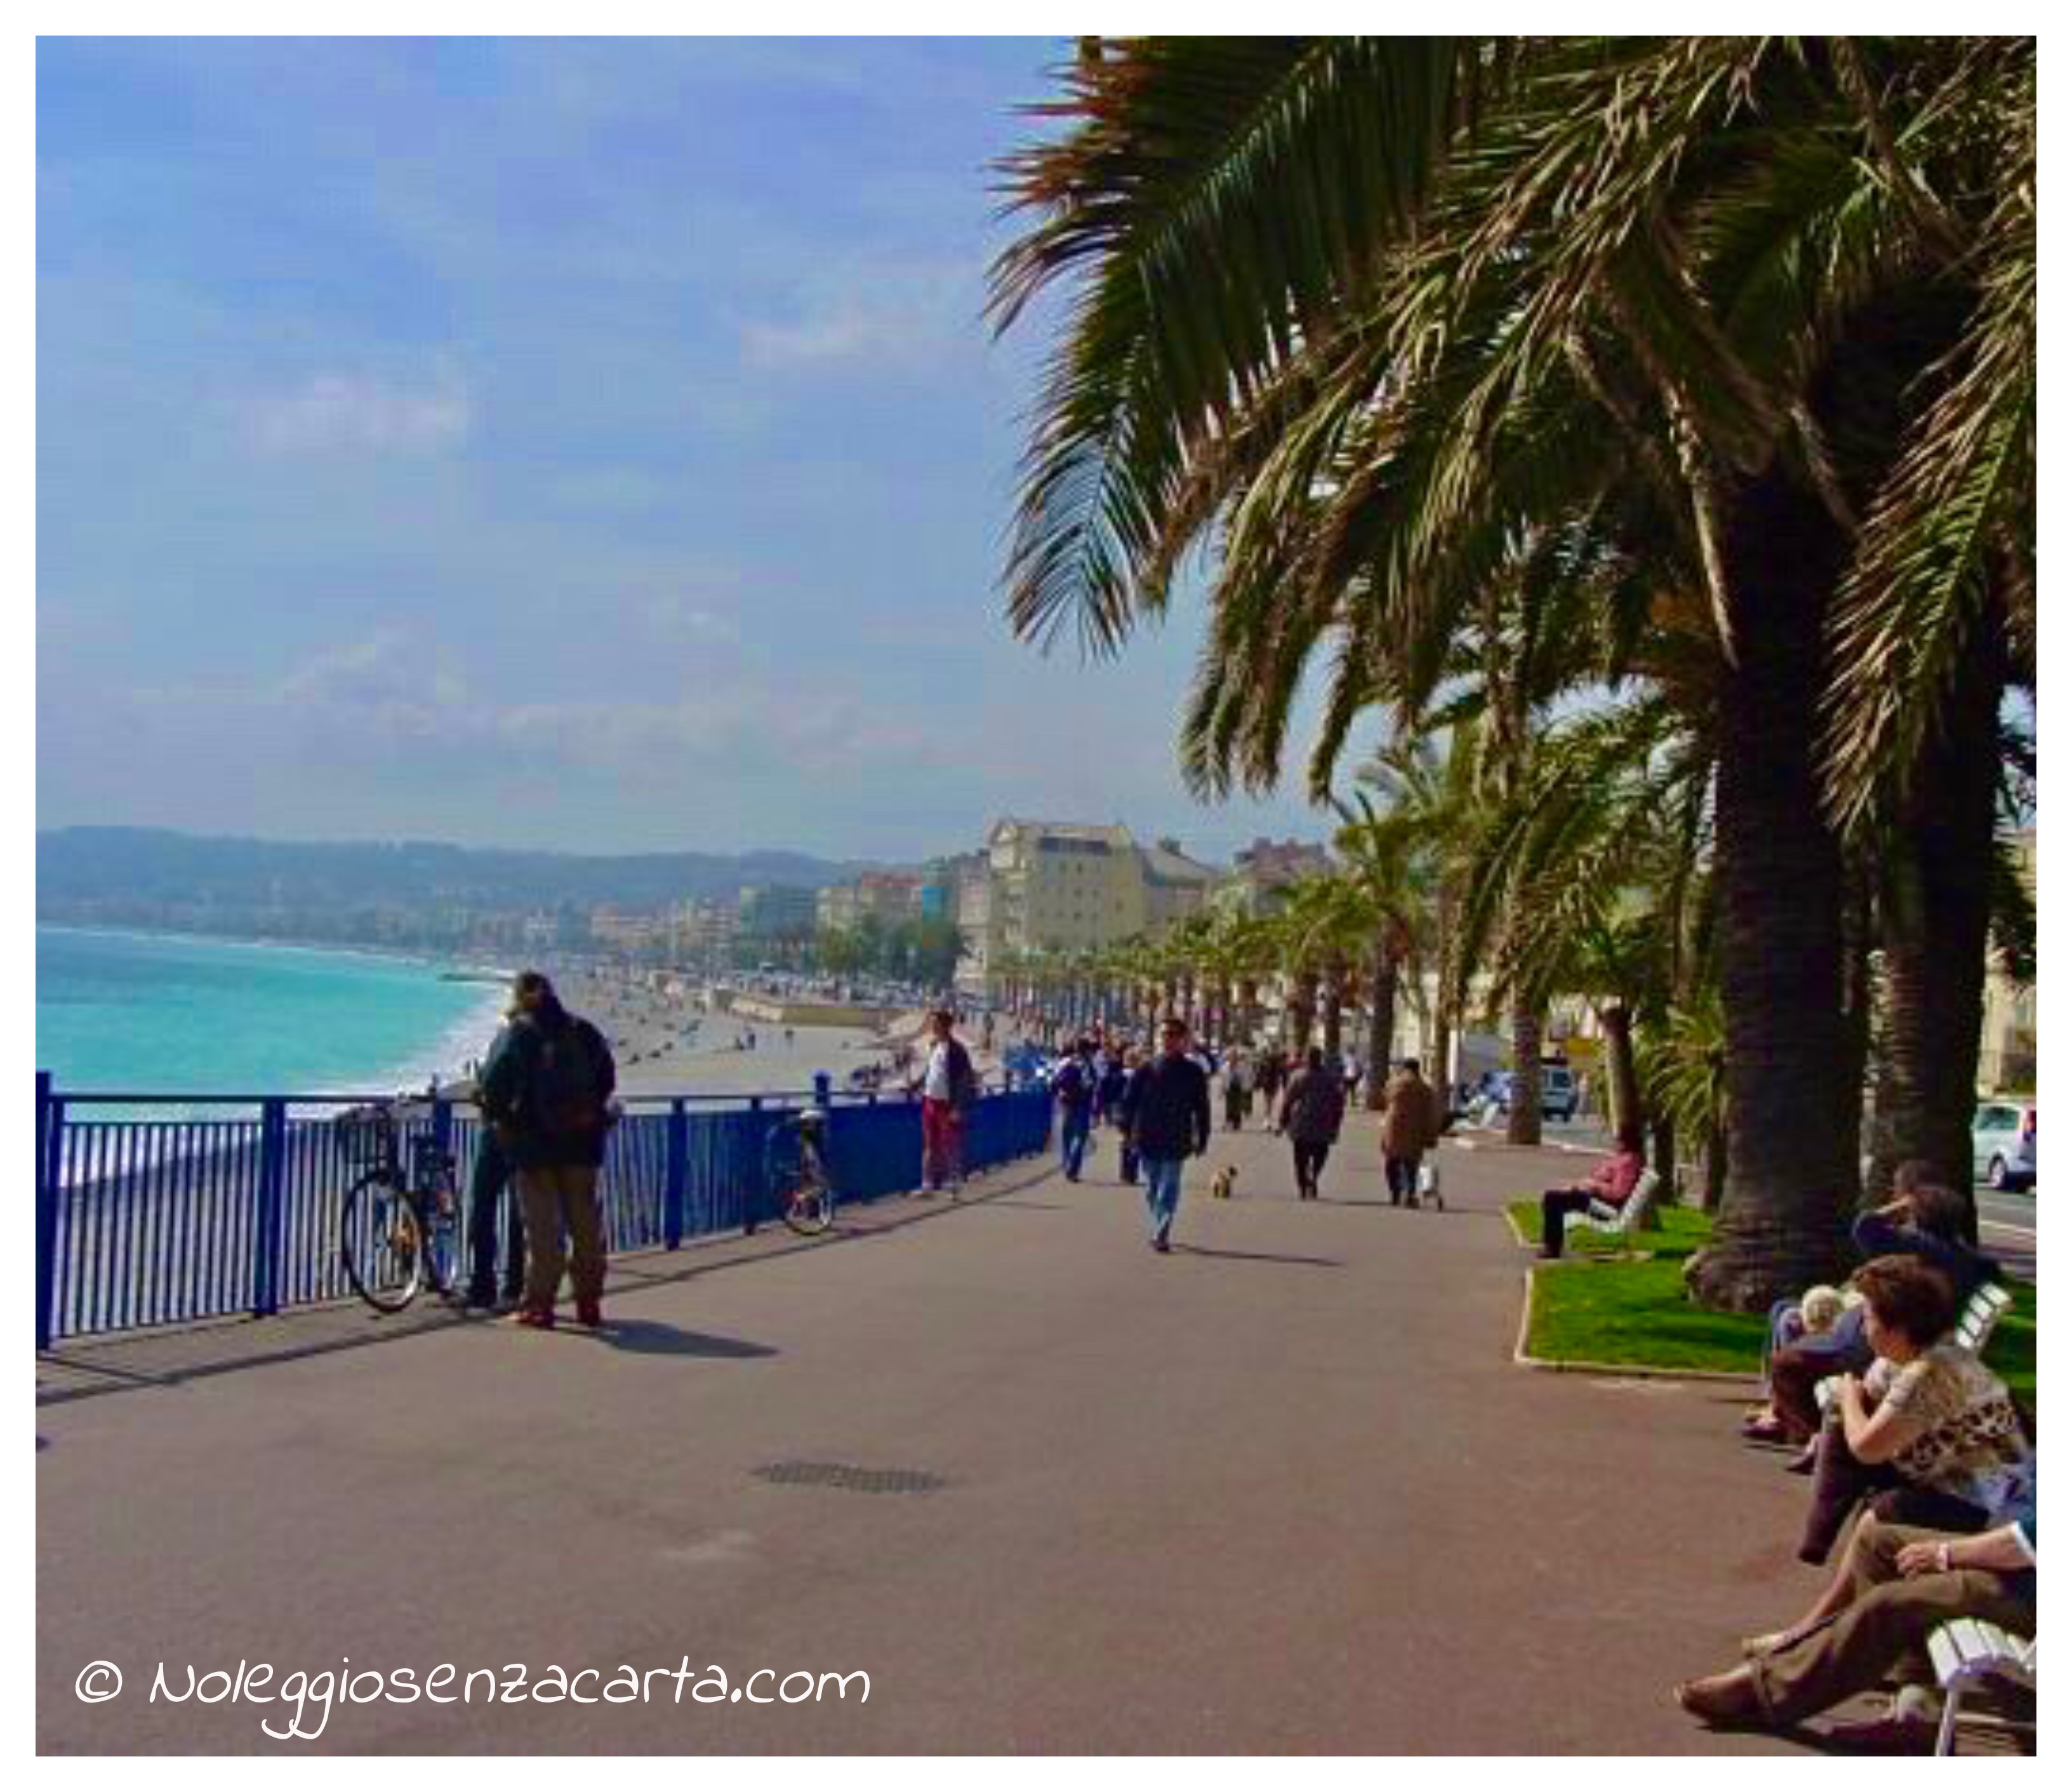 Noleggiare auto senza carta di credito a Nizza – Costa Azzurra